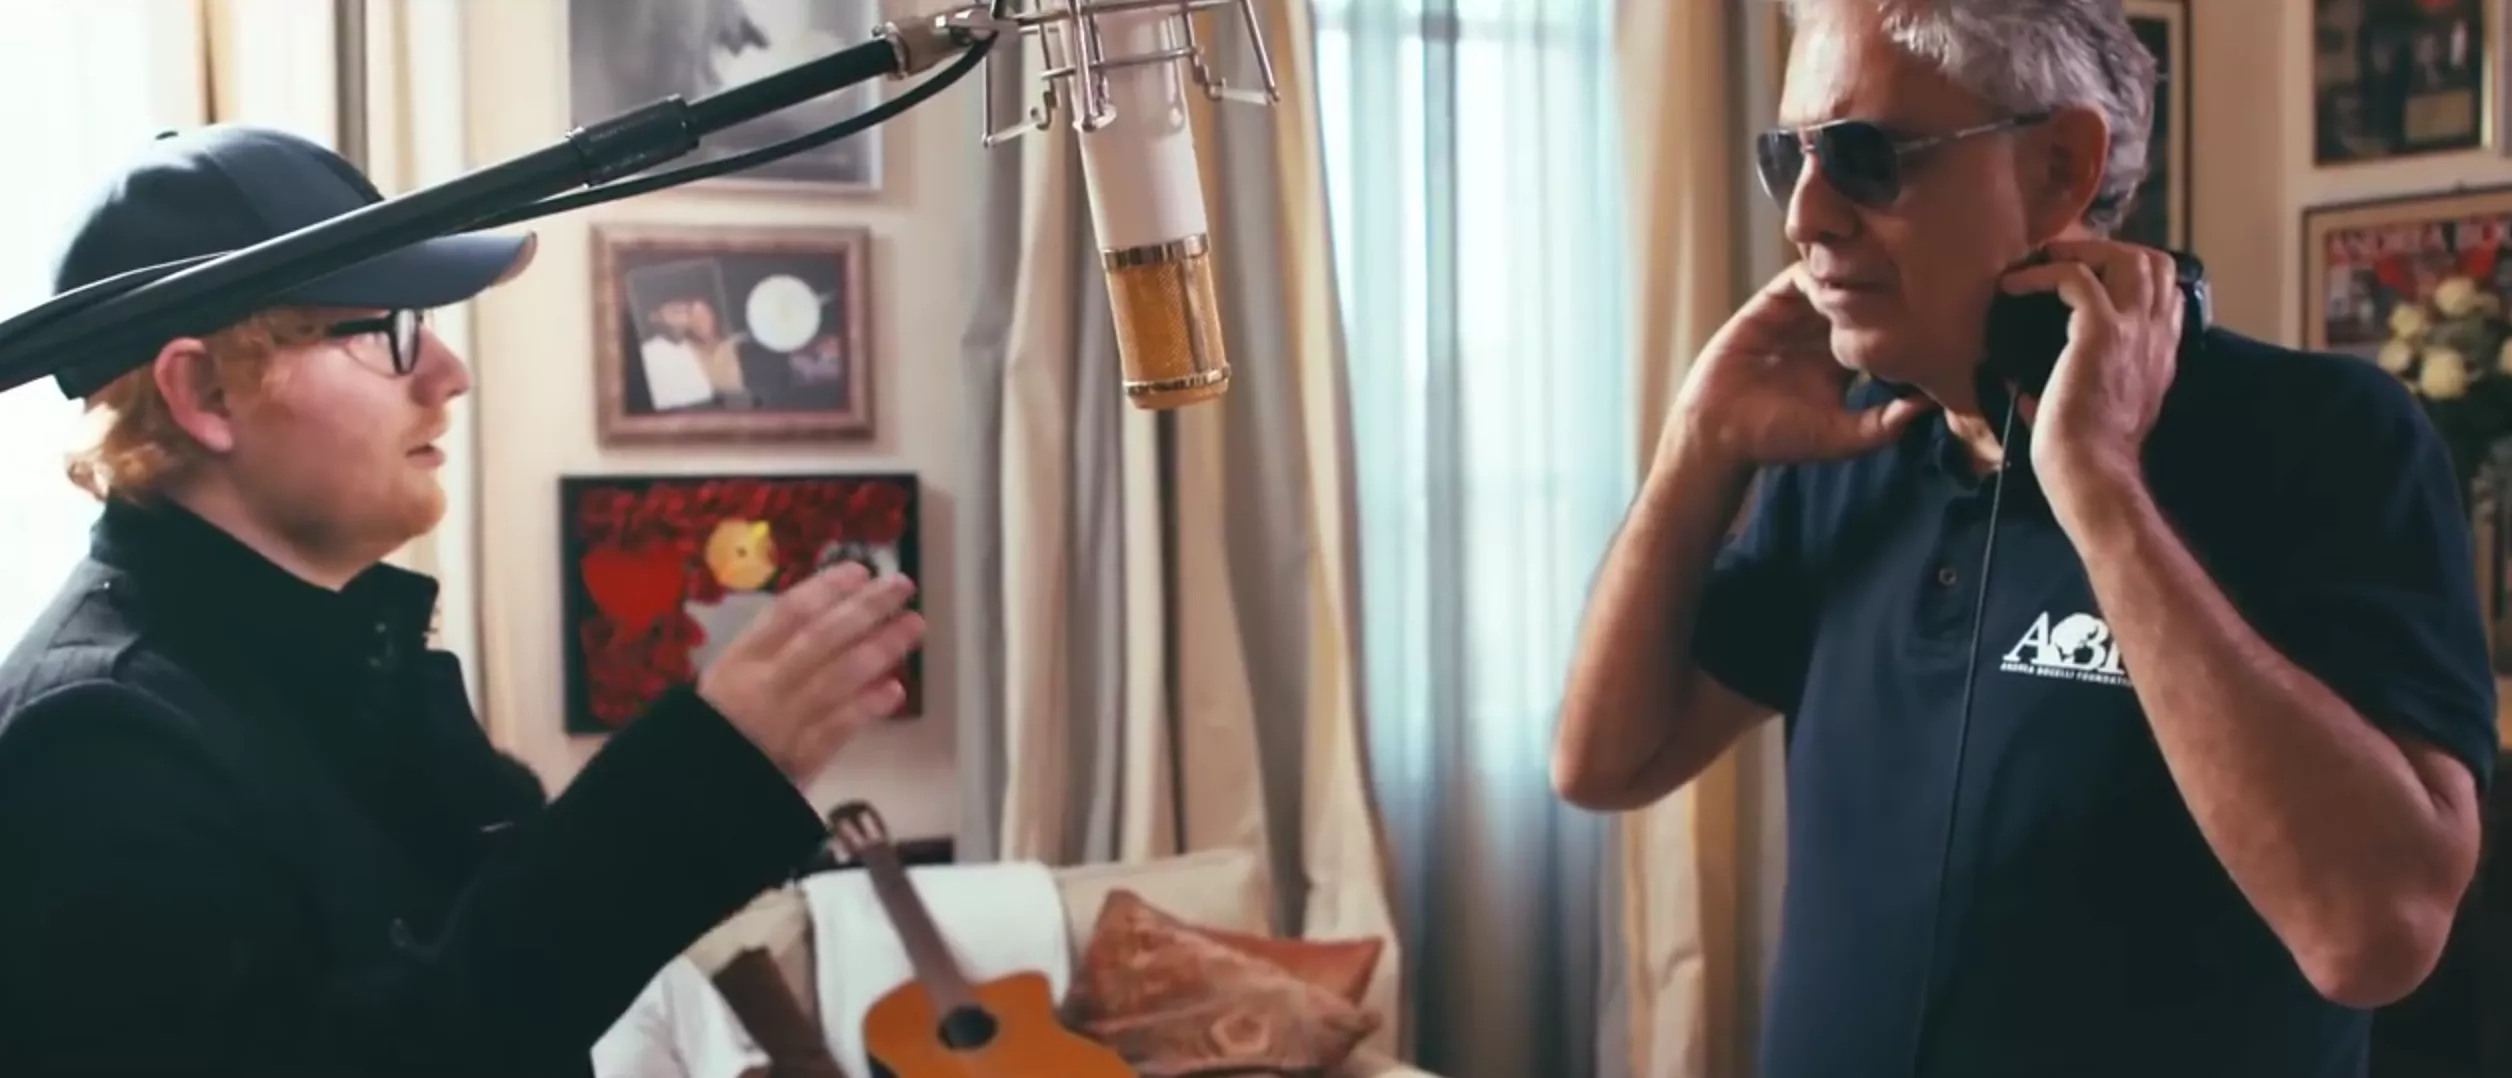 Video: Ed Sheeran synger duet med stjernetenor